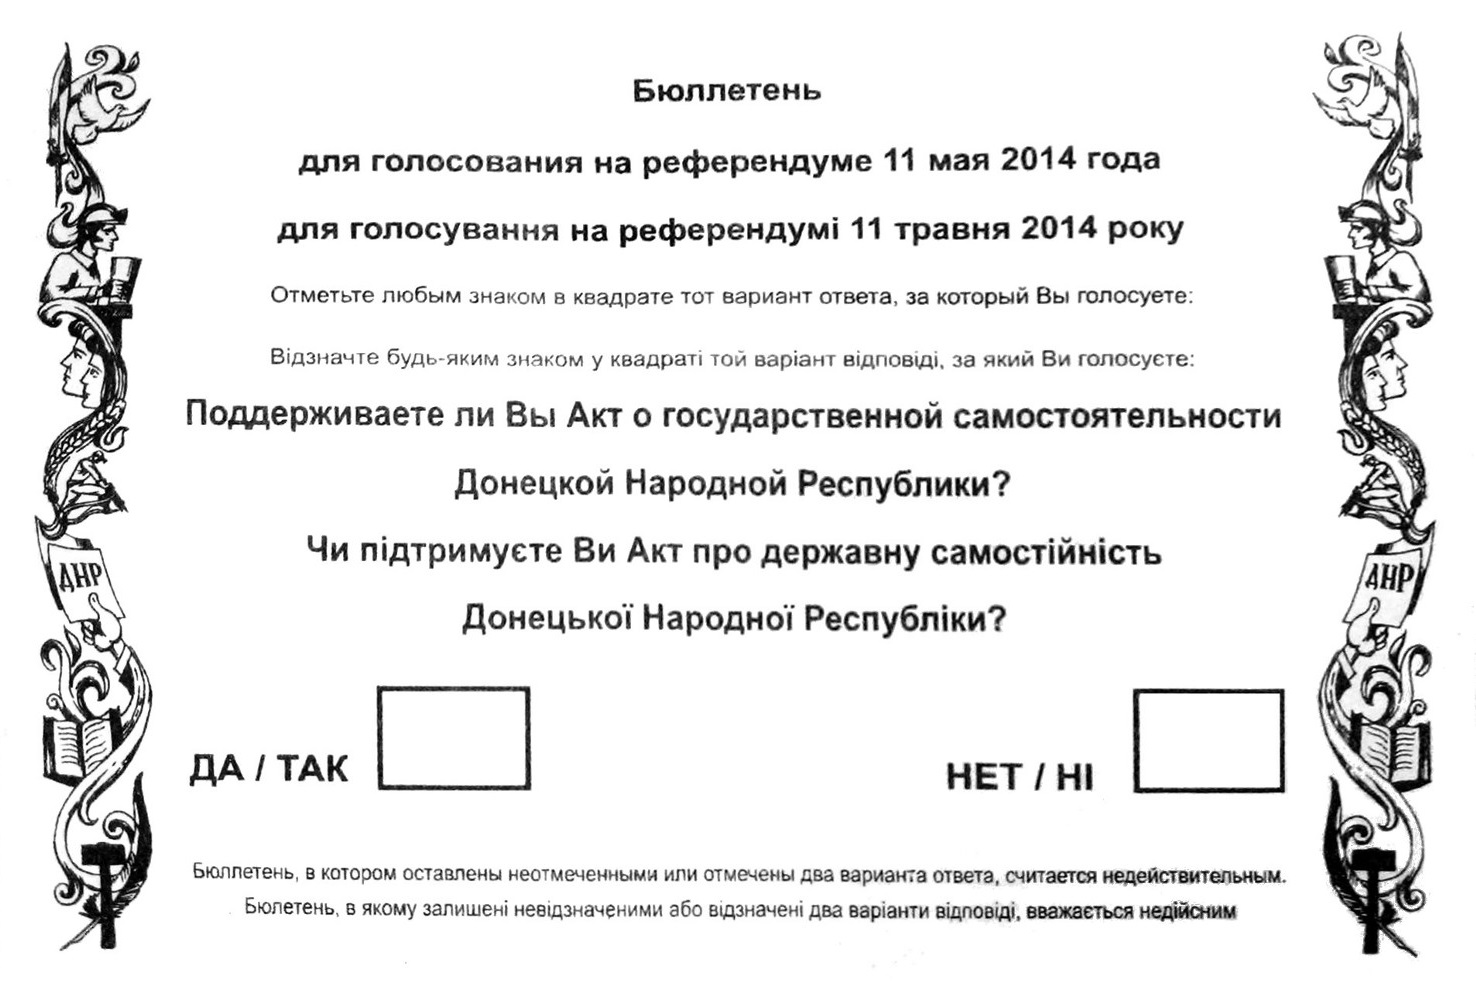 Референдум 11 мая 2014 года